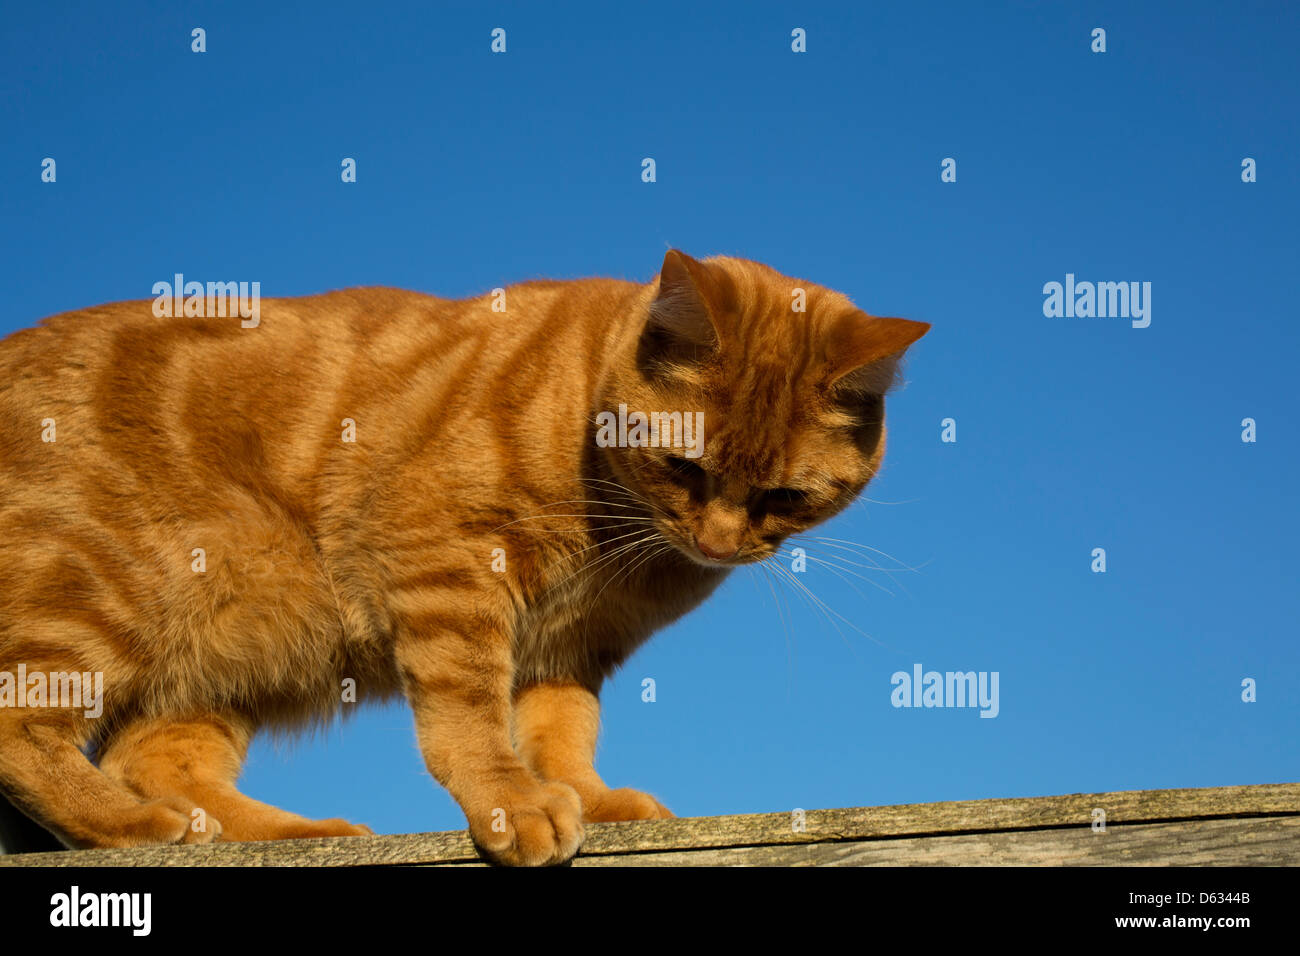 Ingwer Katze ausgewogen auf der Oberseite einen Zaun Stockfoto